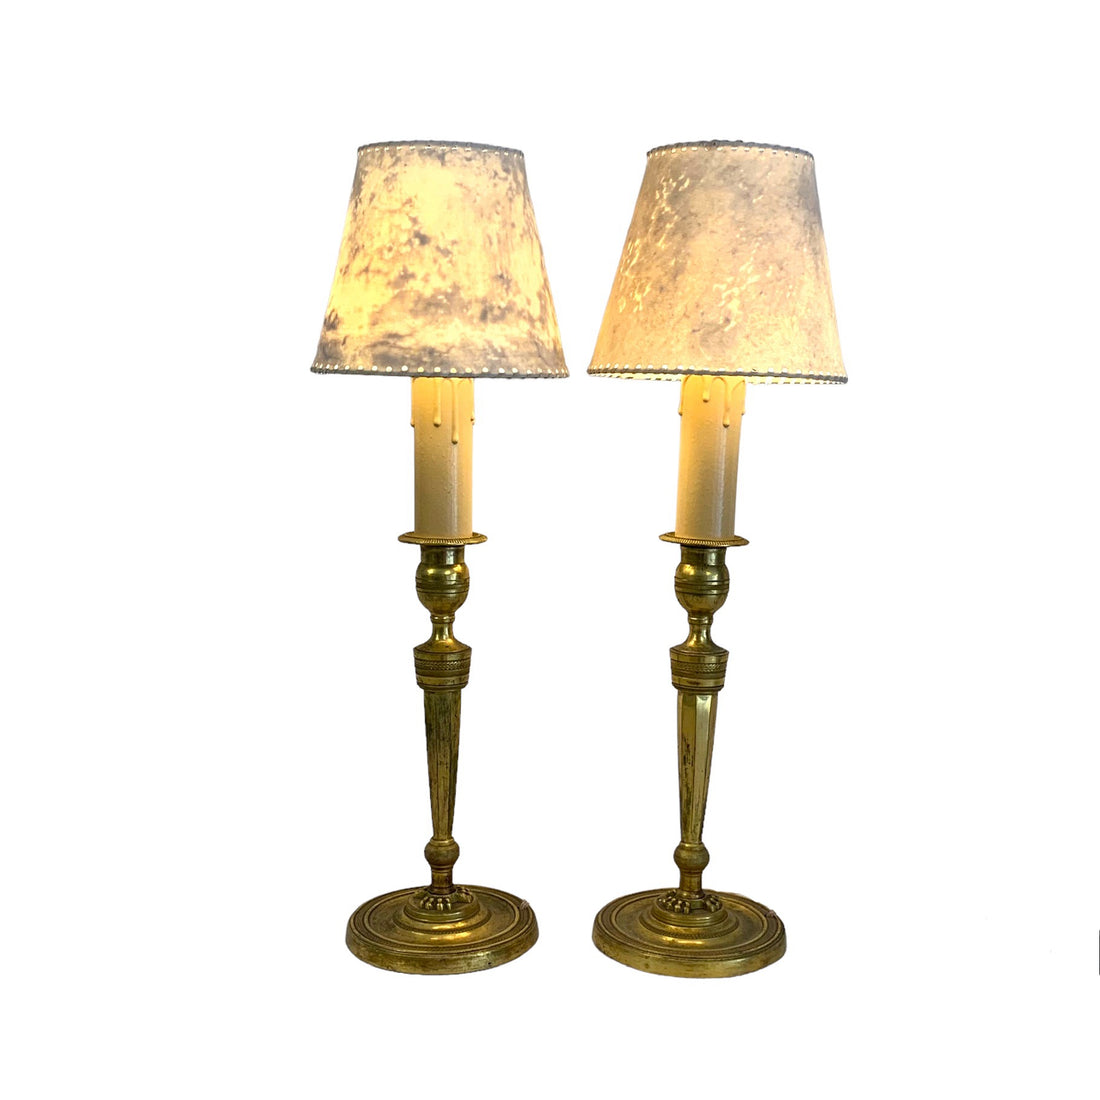 Par de lámparas de bronce estilo imperio. SXIX